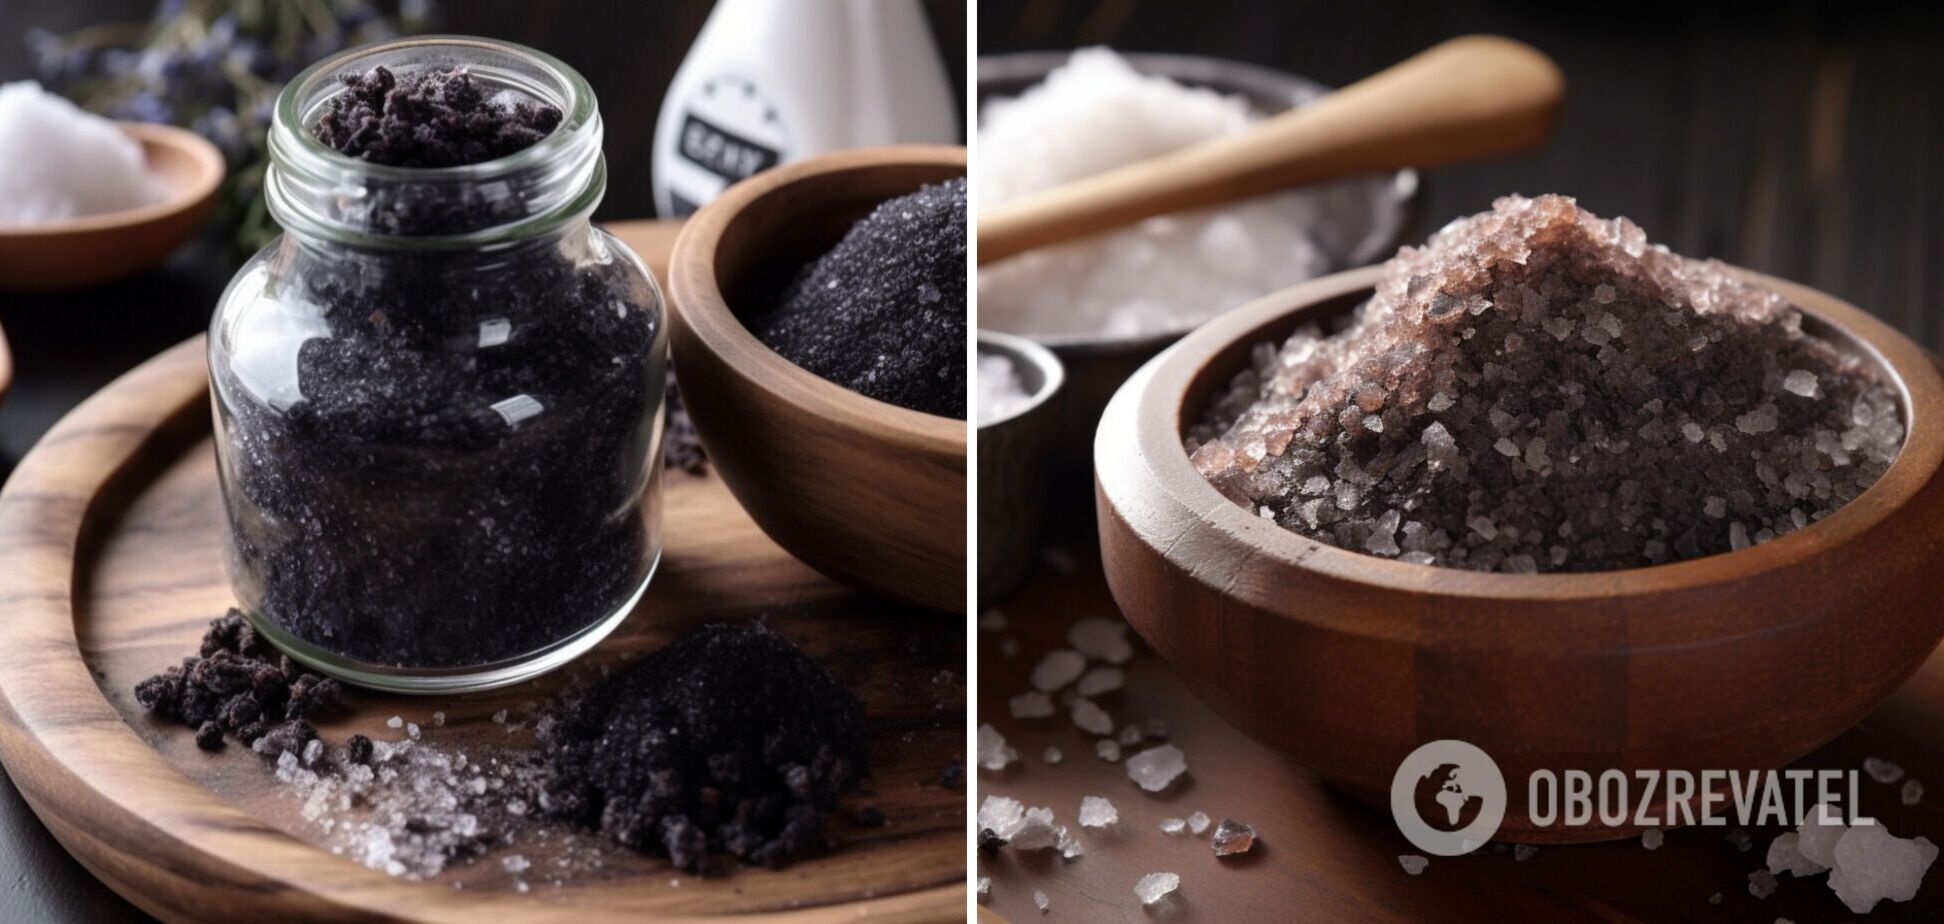 Четверговая соль: как приготовить и использовать оберег